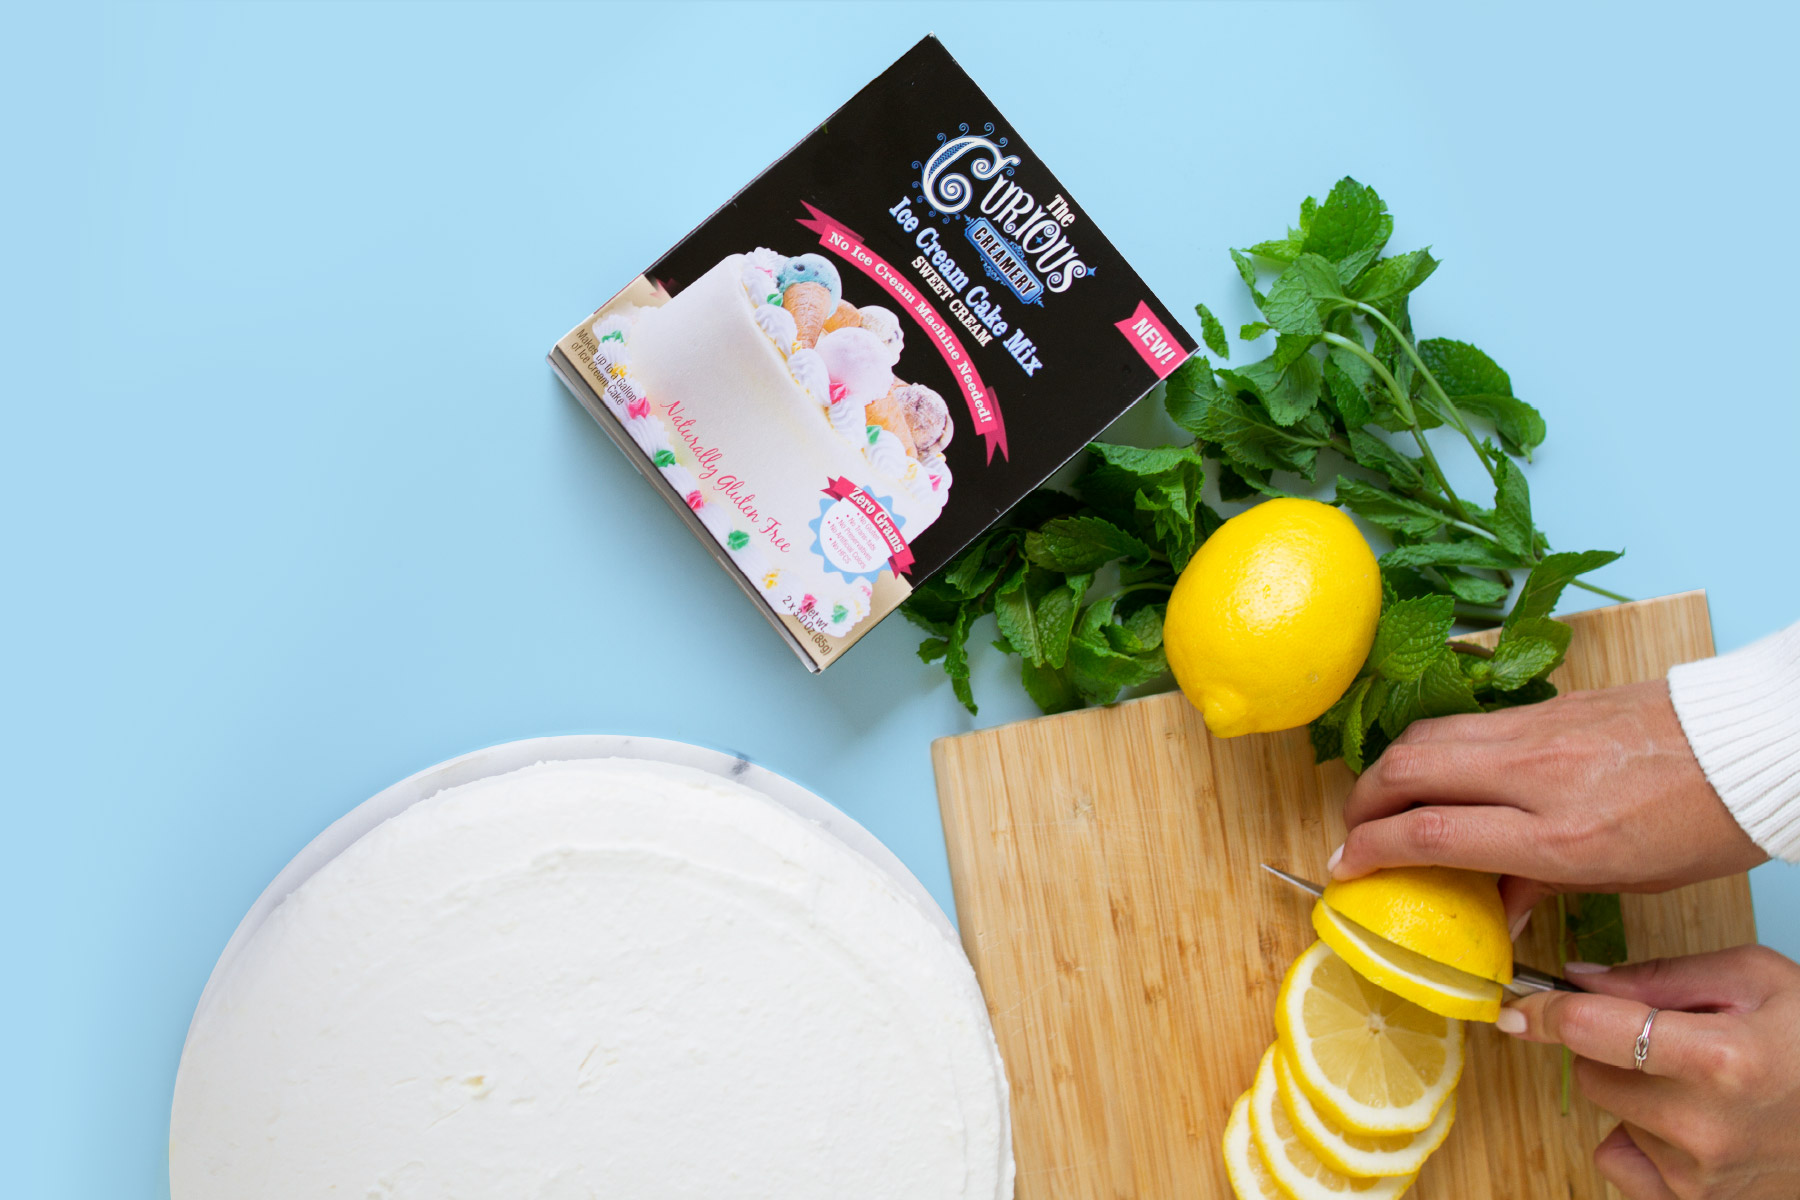 Fuze-Branding-Curious-Creamery-DIY-Ice-Cream-Cake-Decorating-Slicing-Lemons-Product-Lifestyle-Photography